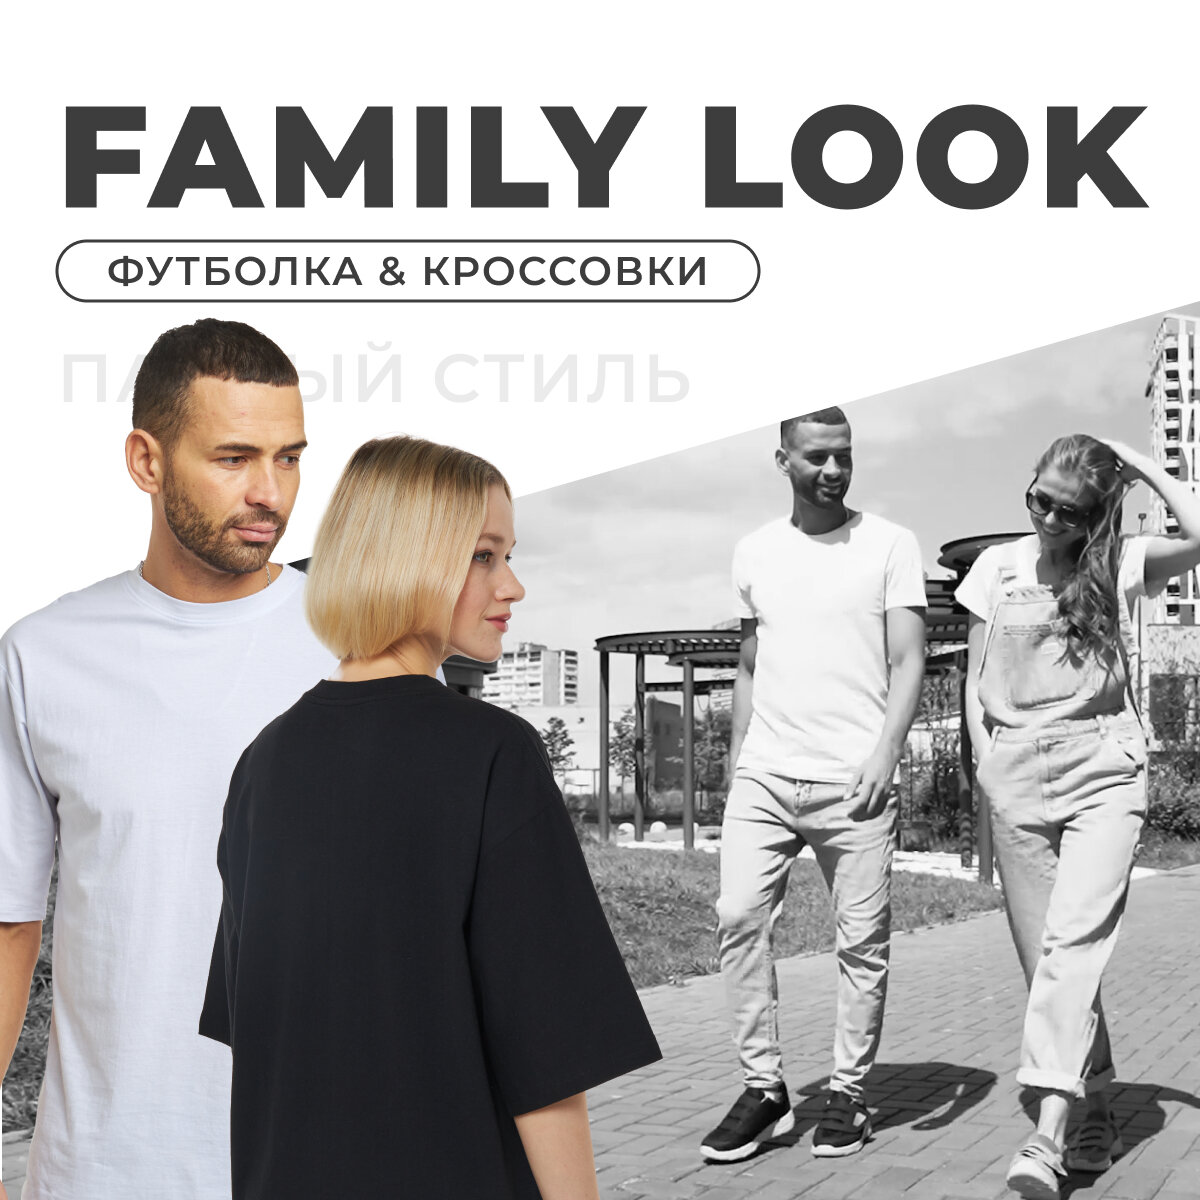 Фэмили лук (Family look) – это стильные, красивые и по-семейному уютные образы. Семейный стиль визуально объединяет всех членов семьи и показывает окружающим, что вы – единое целое.